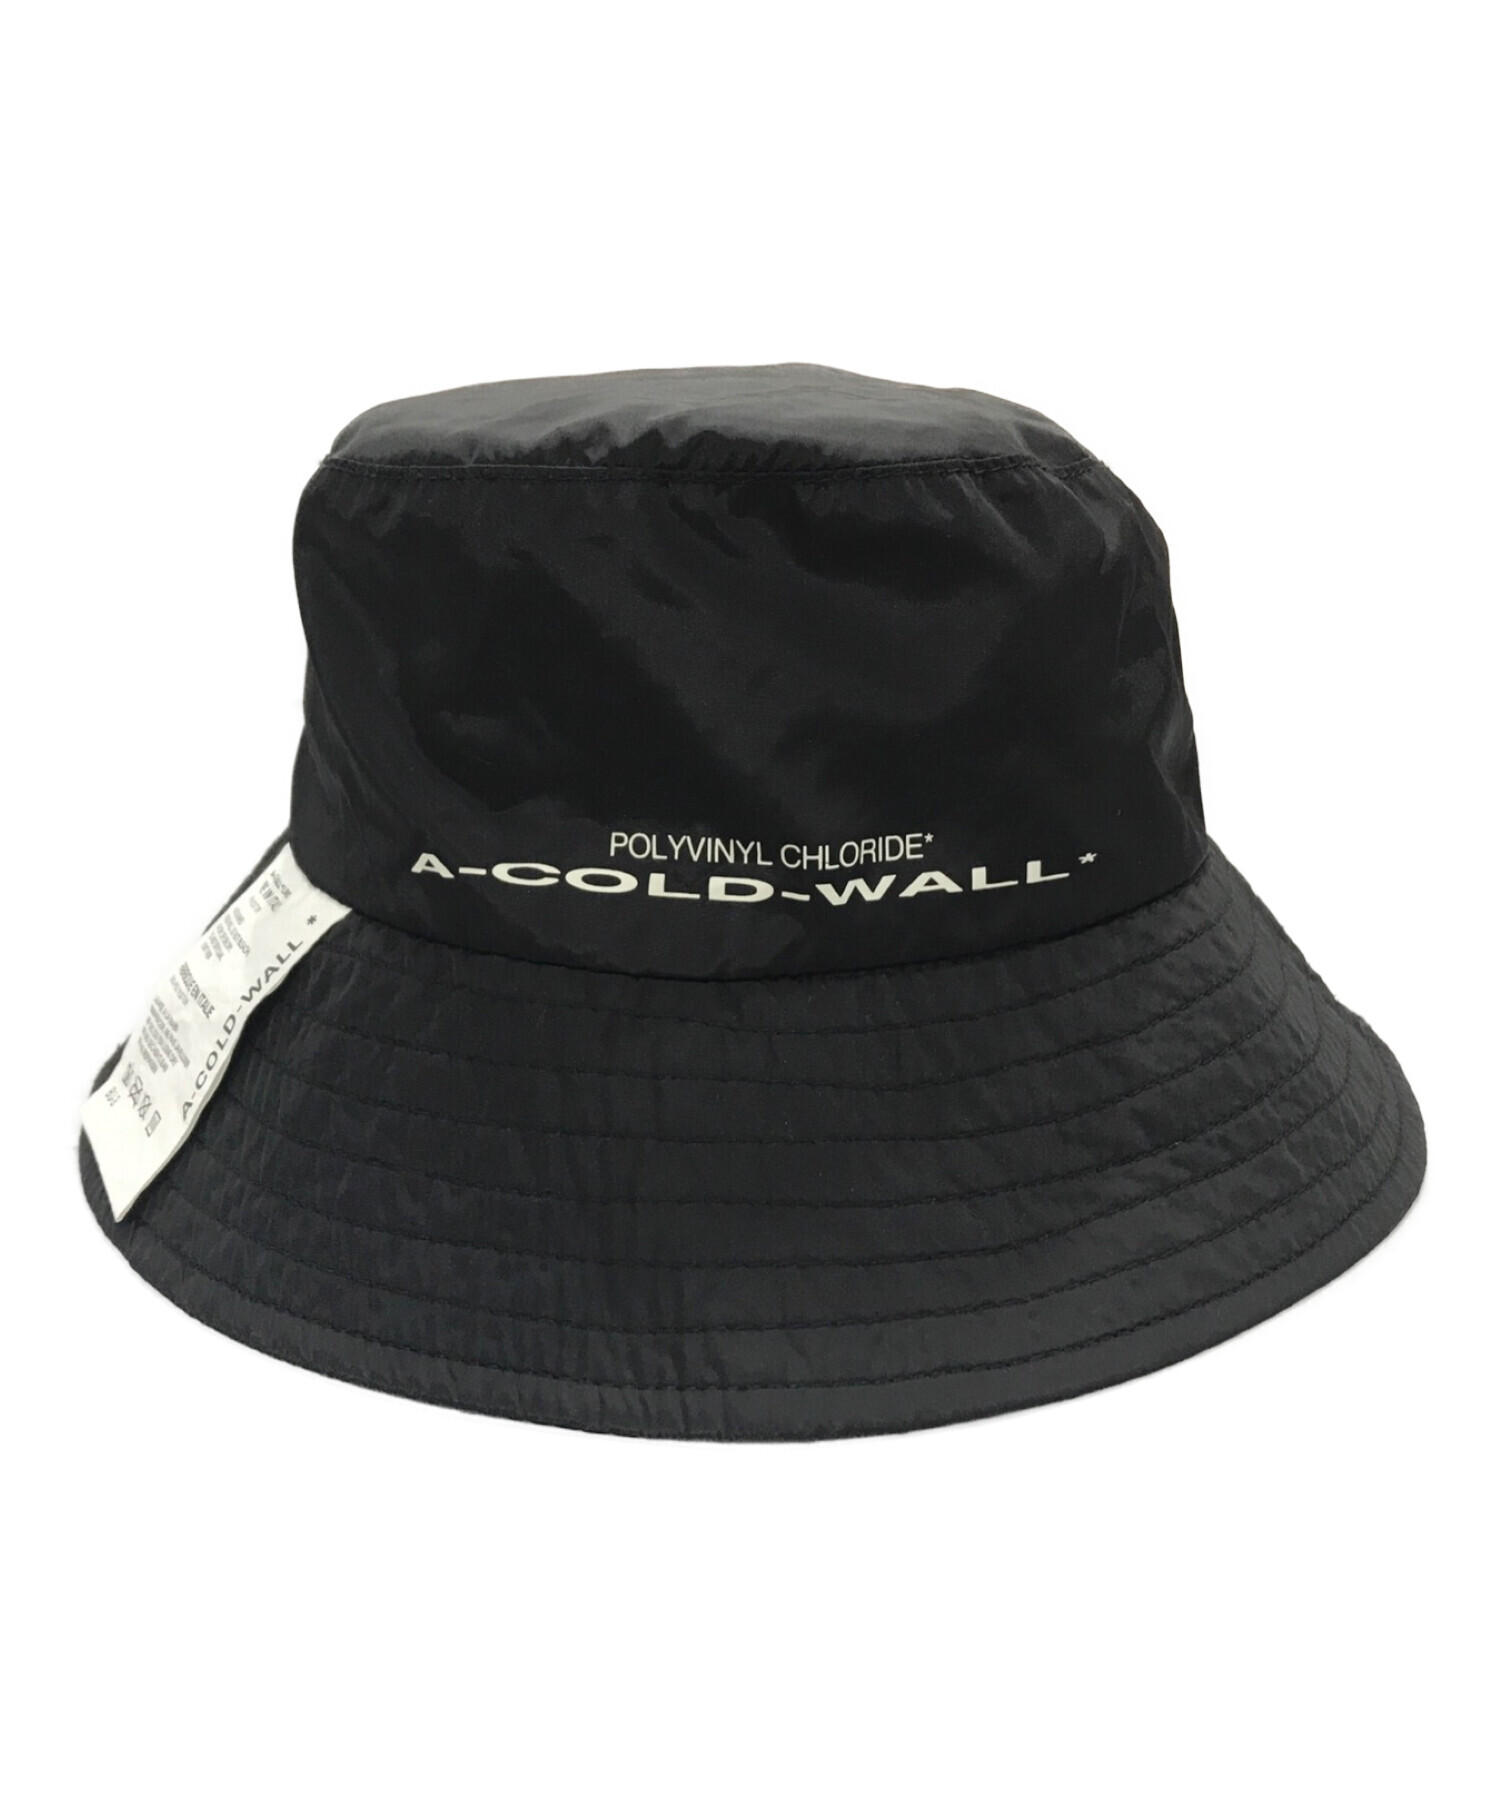 A-COLD-WALL (ア コールド ウォール) バケットハット ブラック